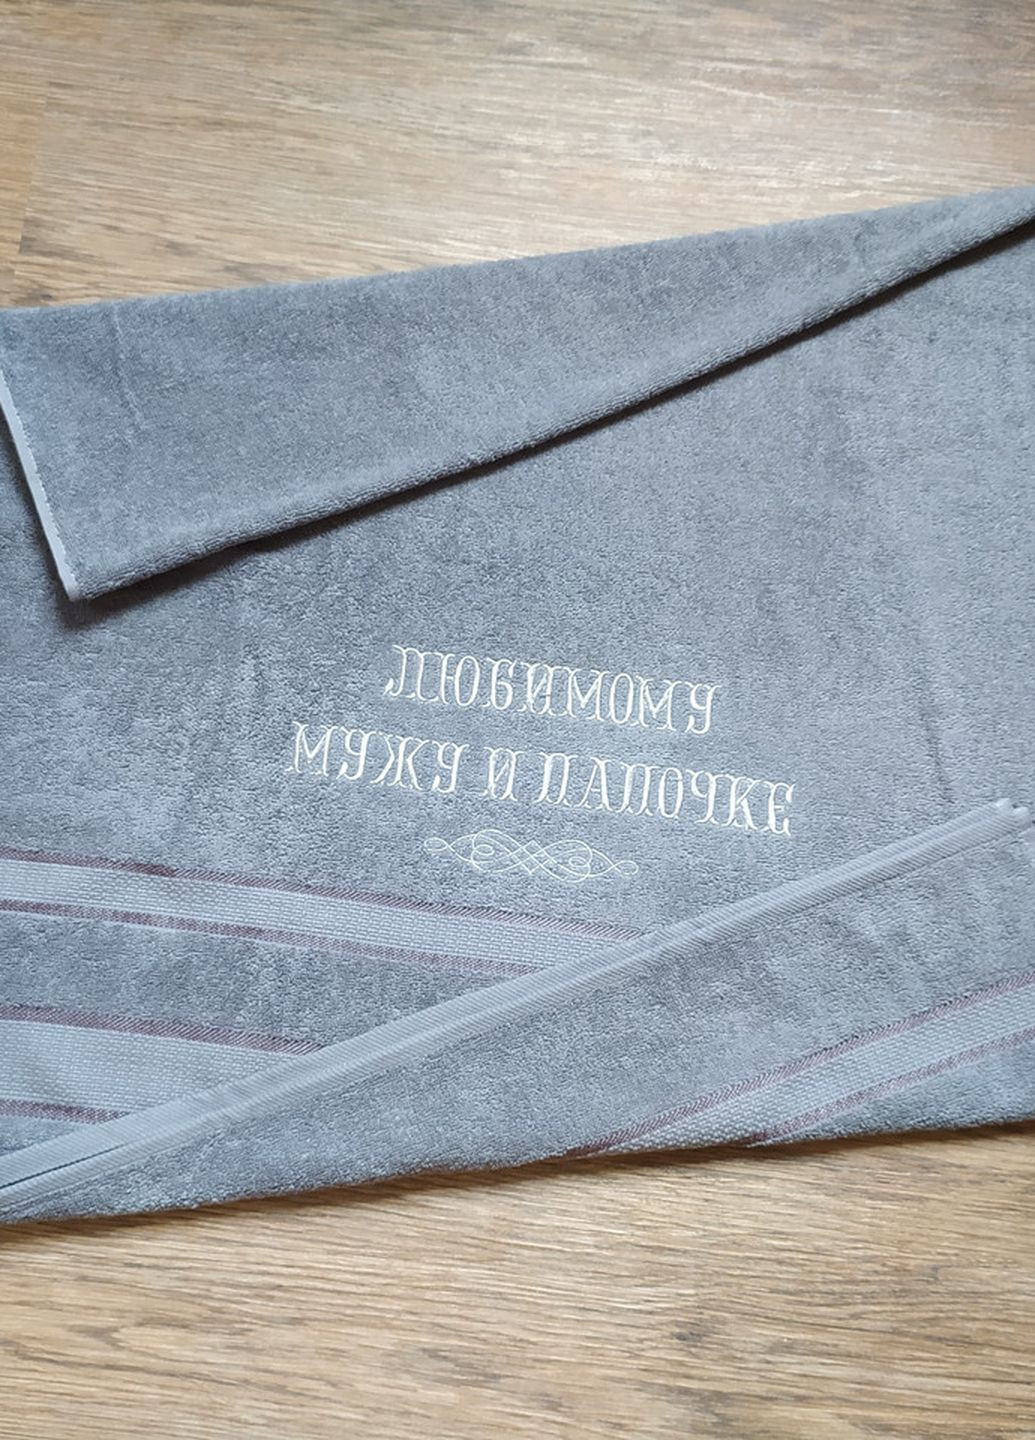 No Brand полотенце с вышивкой махровое банное 70*140 серый мужу папе 00089 однотонный серый производство - Украина